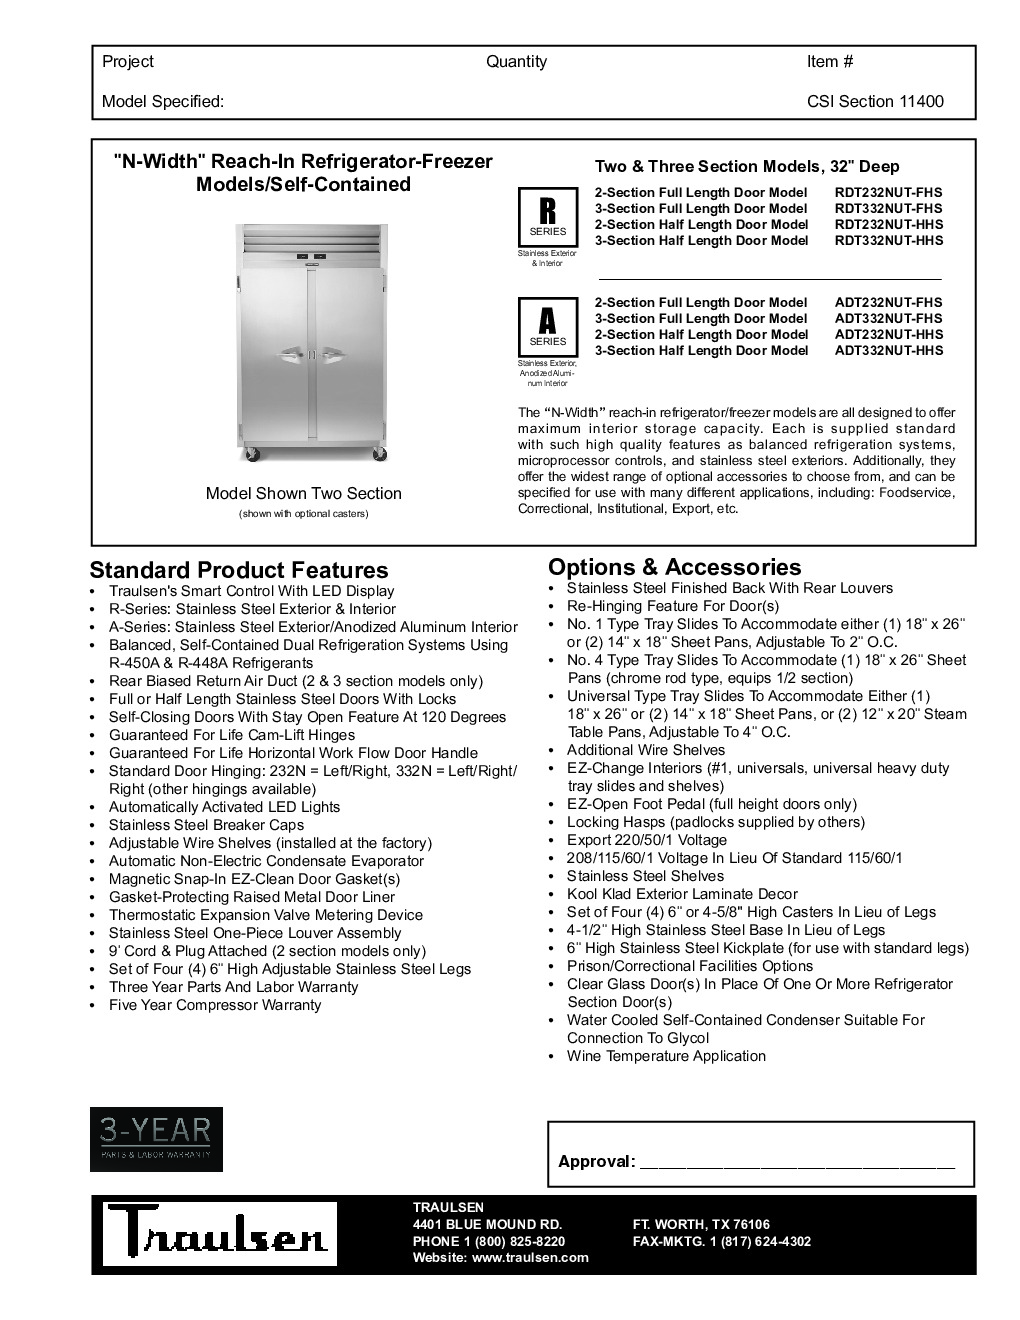 Traulsen ADT332NUT-HHS Reach-In Refrigerator Freezer